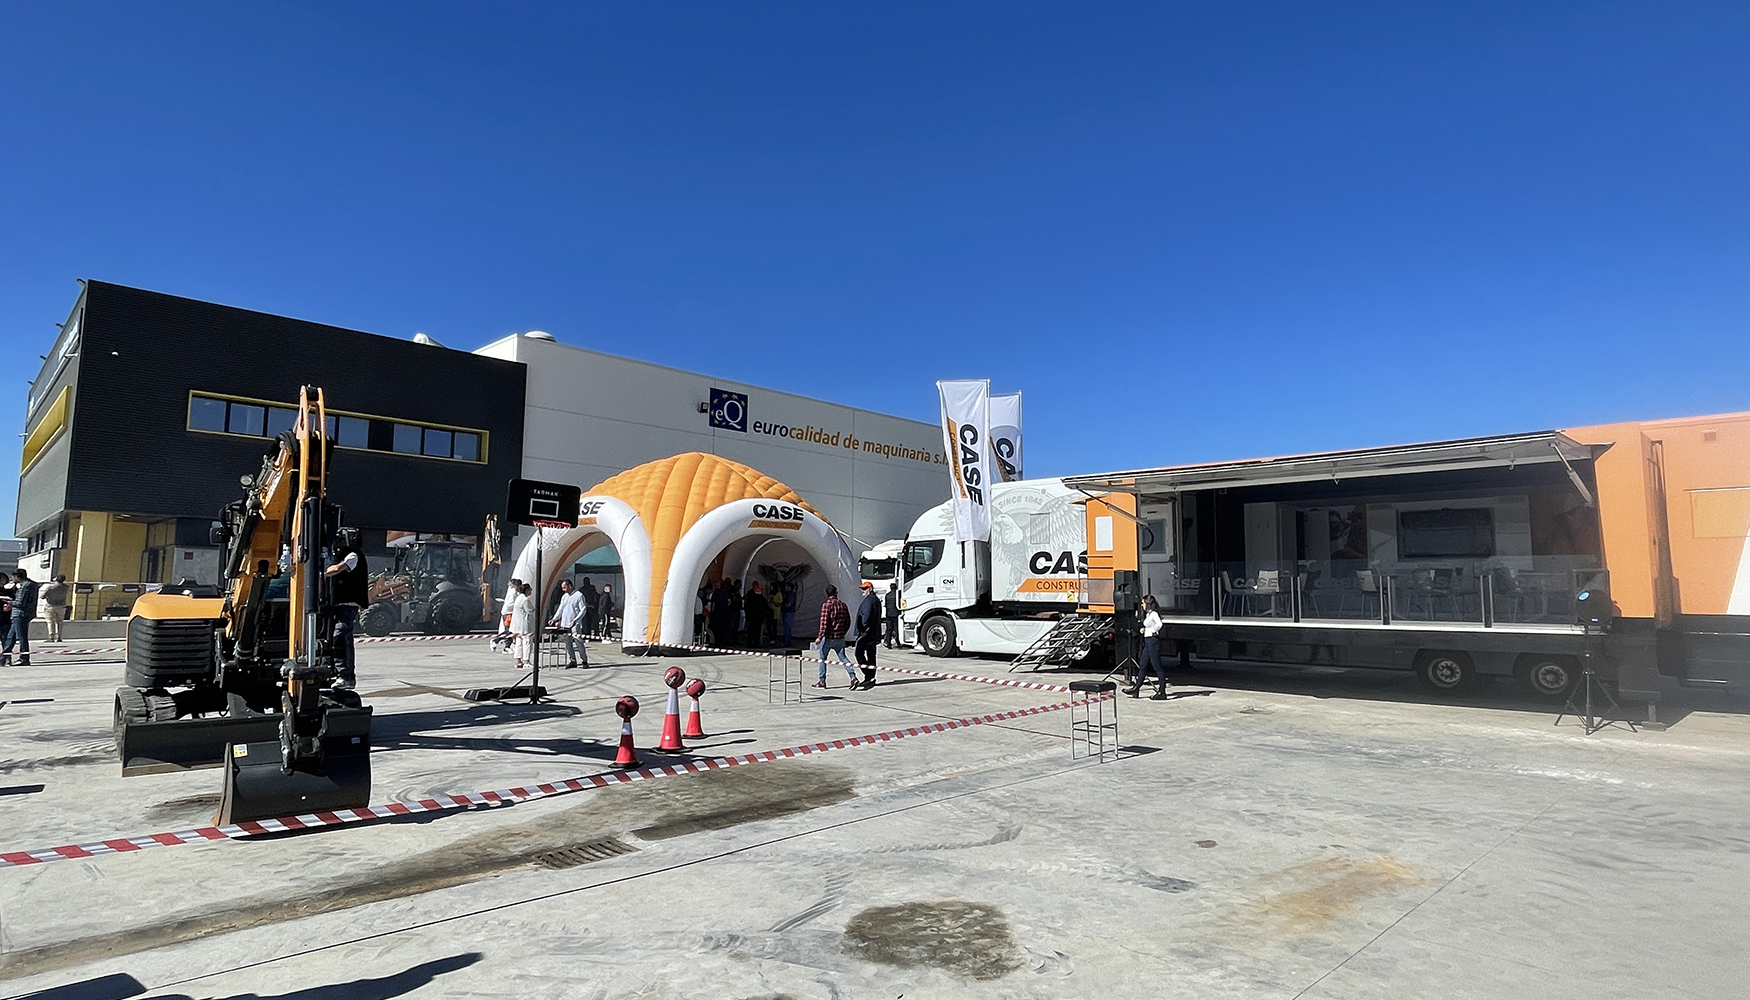 Las instalaciones de Eurocalidad de Maquinaria en Viclvaro (Madrid) volvieron a acoger una jornada de puertas abiertas